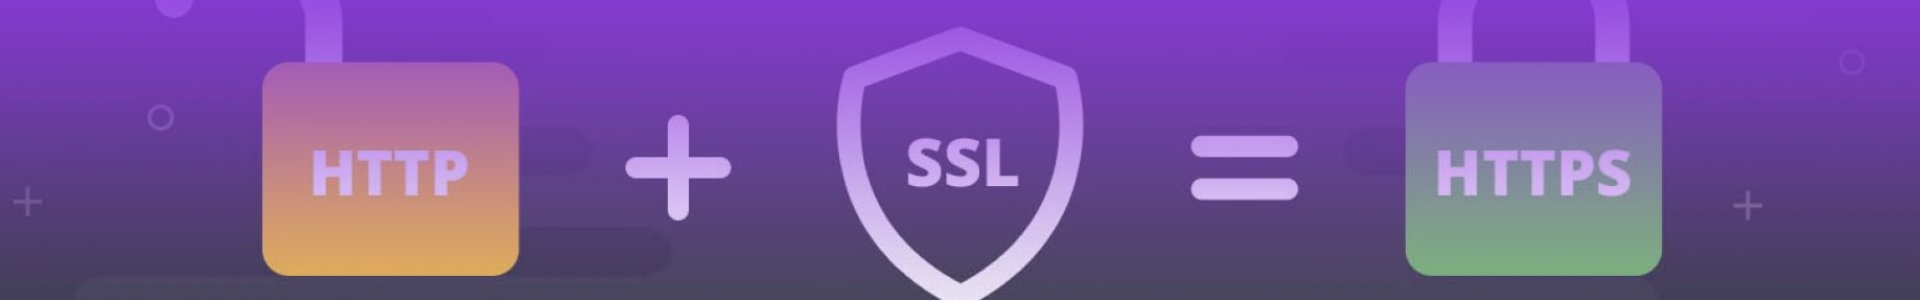 איזה סוג של תעודת SSL האתר שלך צריך?